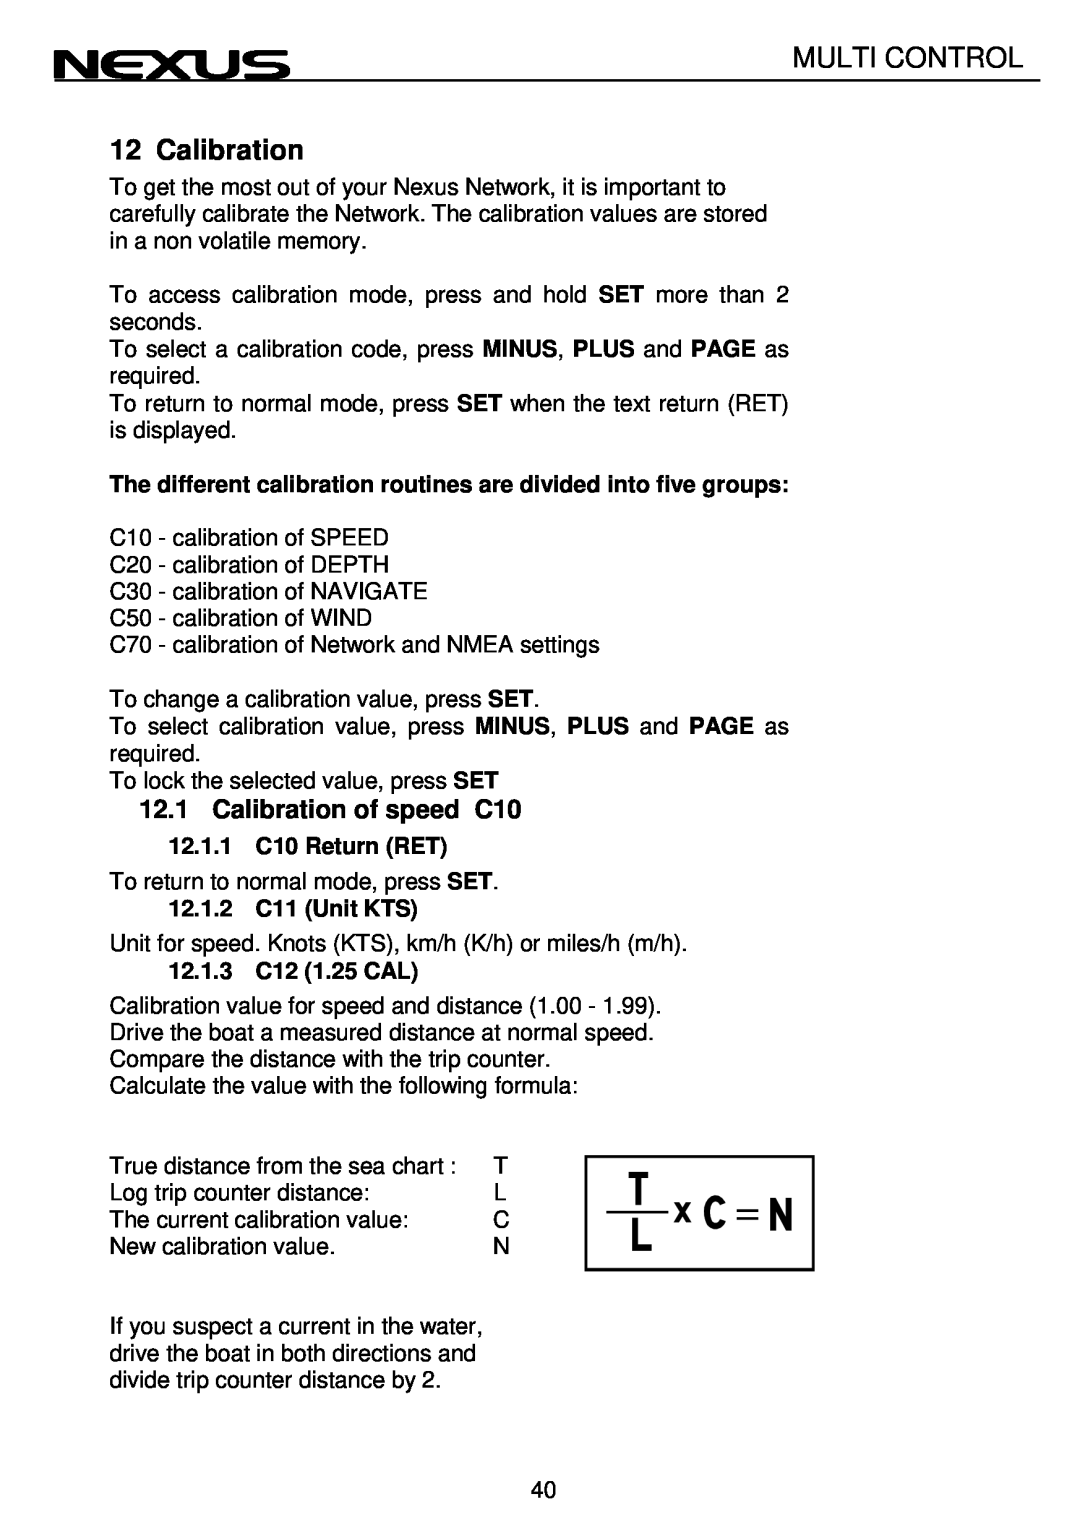 Nexus 21 Multi Control 12.1Calibration of speed C10, 12.1.1C10 Return RET, 12.1.2C11 Unit KTS, 12.1.3C12 1.25 CAL 